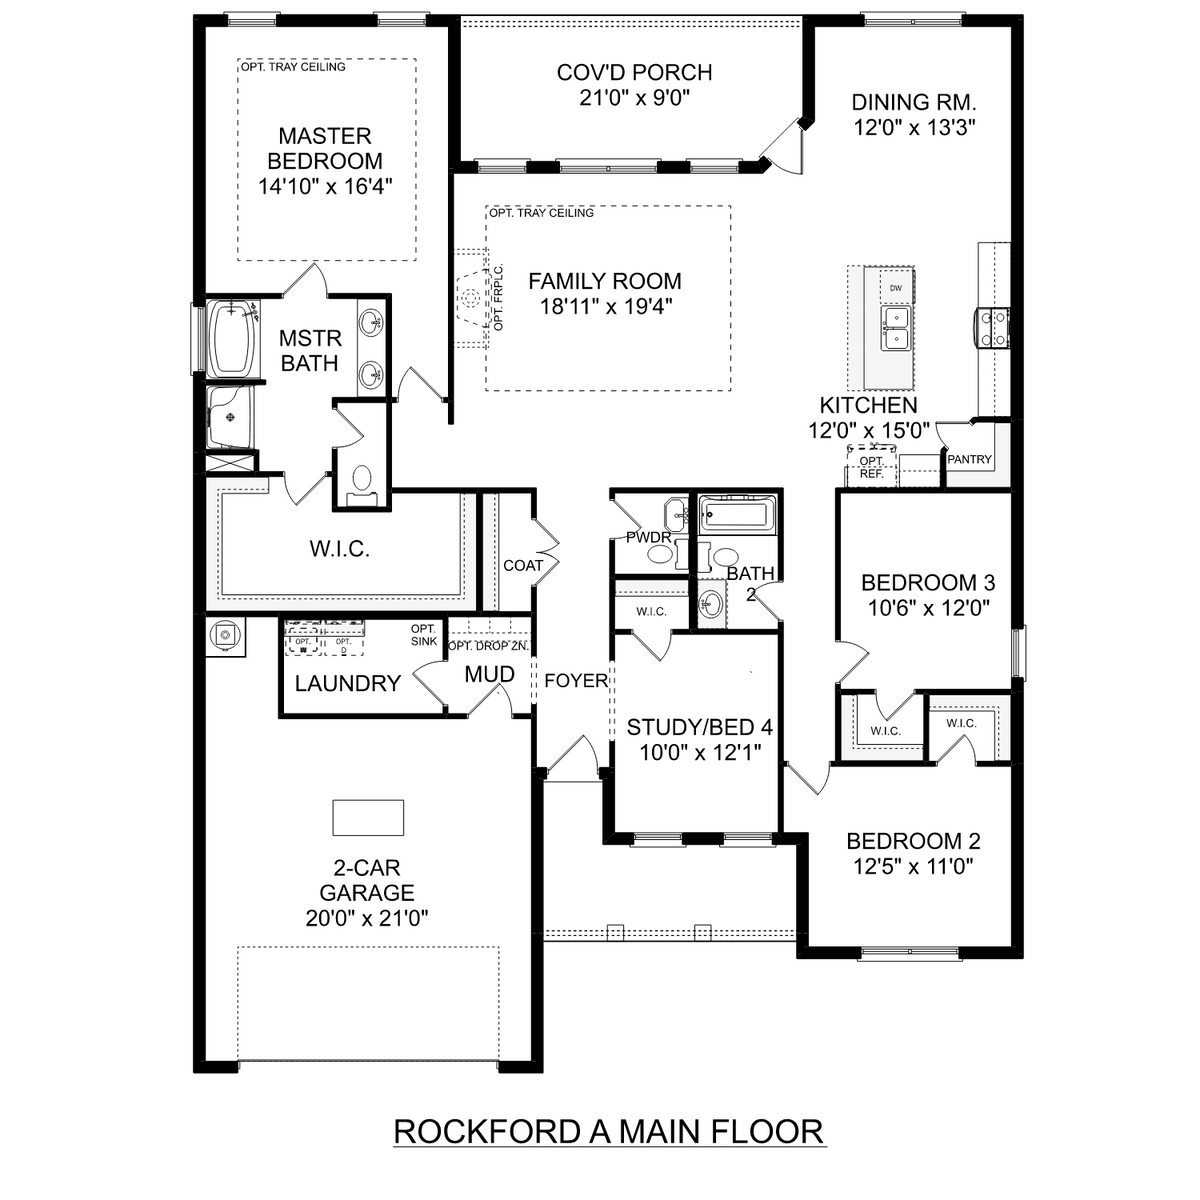 1 - The Rockford floor plan layout for 105 Harper Lane in Davidson Homes' Barnett's Crossing community.